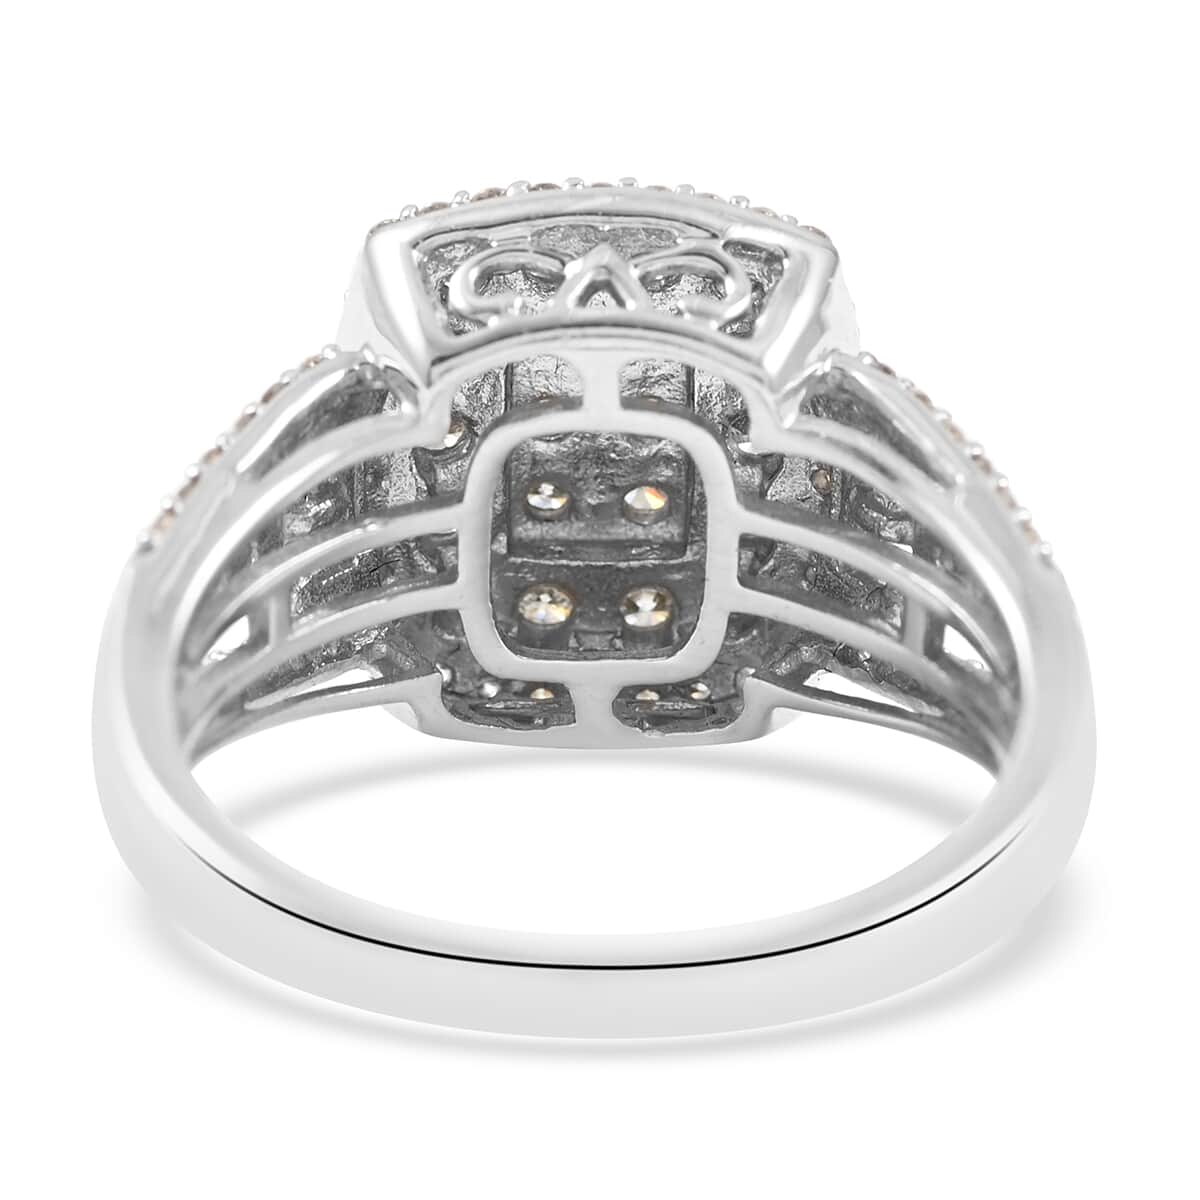 10K White Gold G-H I2-I3 Diamond Ring (Size 7.0) 4.75 Grams 1.00 ctw image number 4